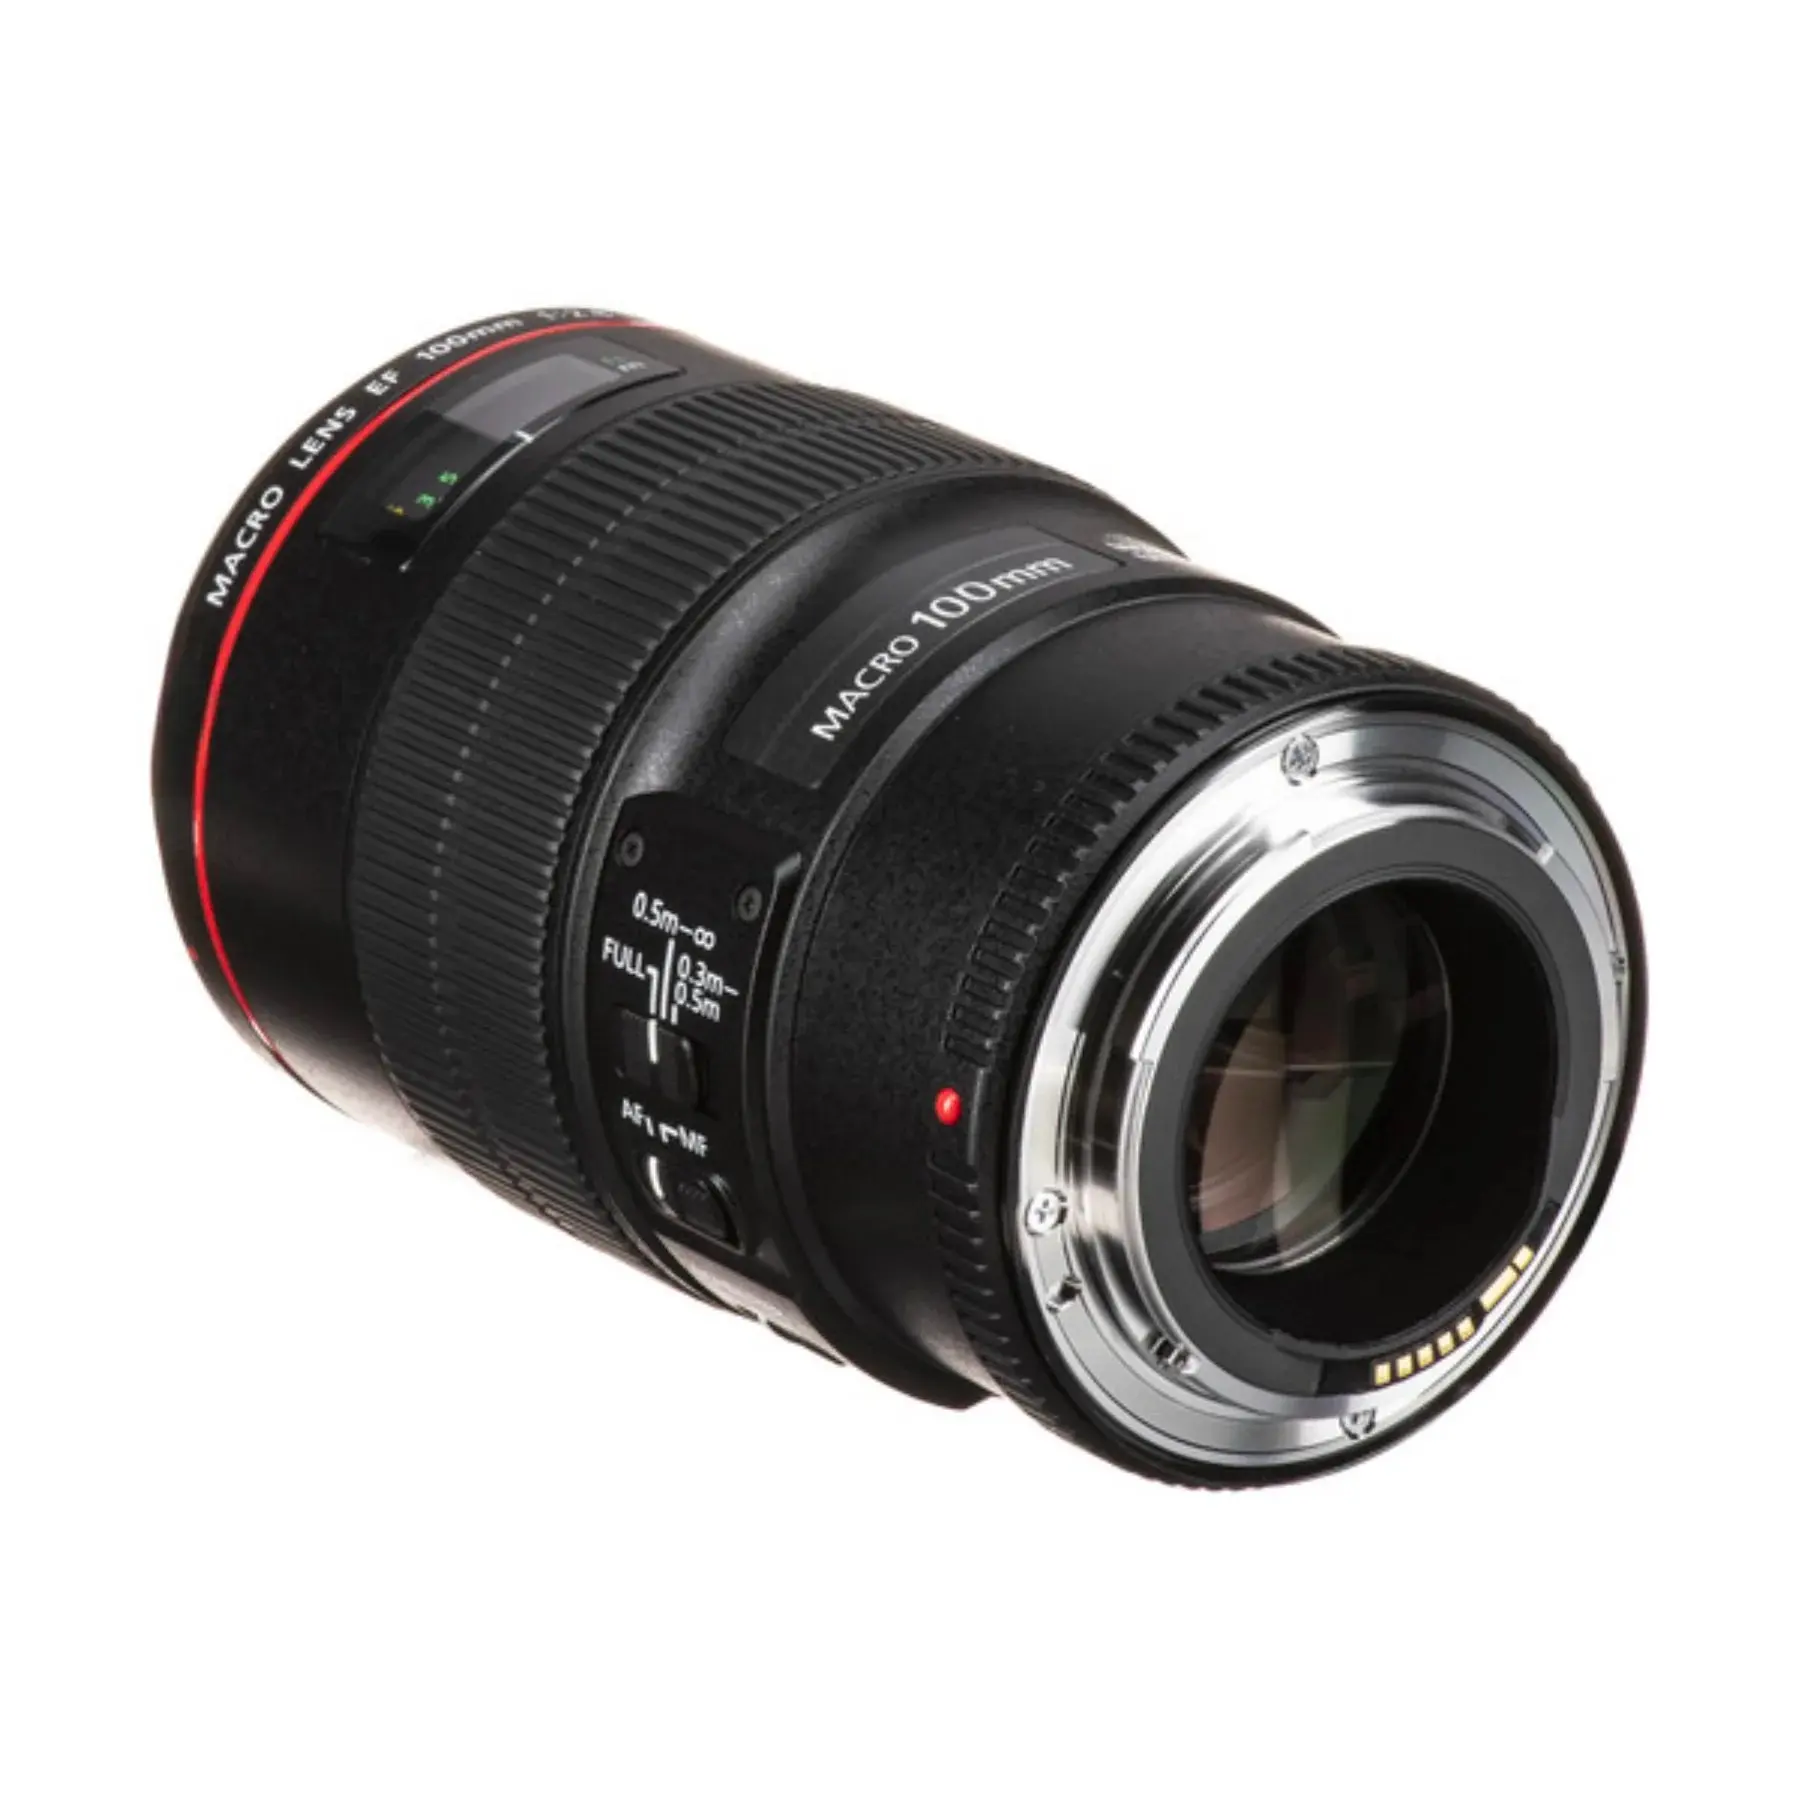 PRIX D'USINE OEM EF 100mm f/2.8L IS USM Macro Objectif pour appareils photo reflex numériques, Objectif uniquement Objectifs d'appareil photo